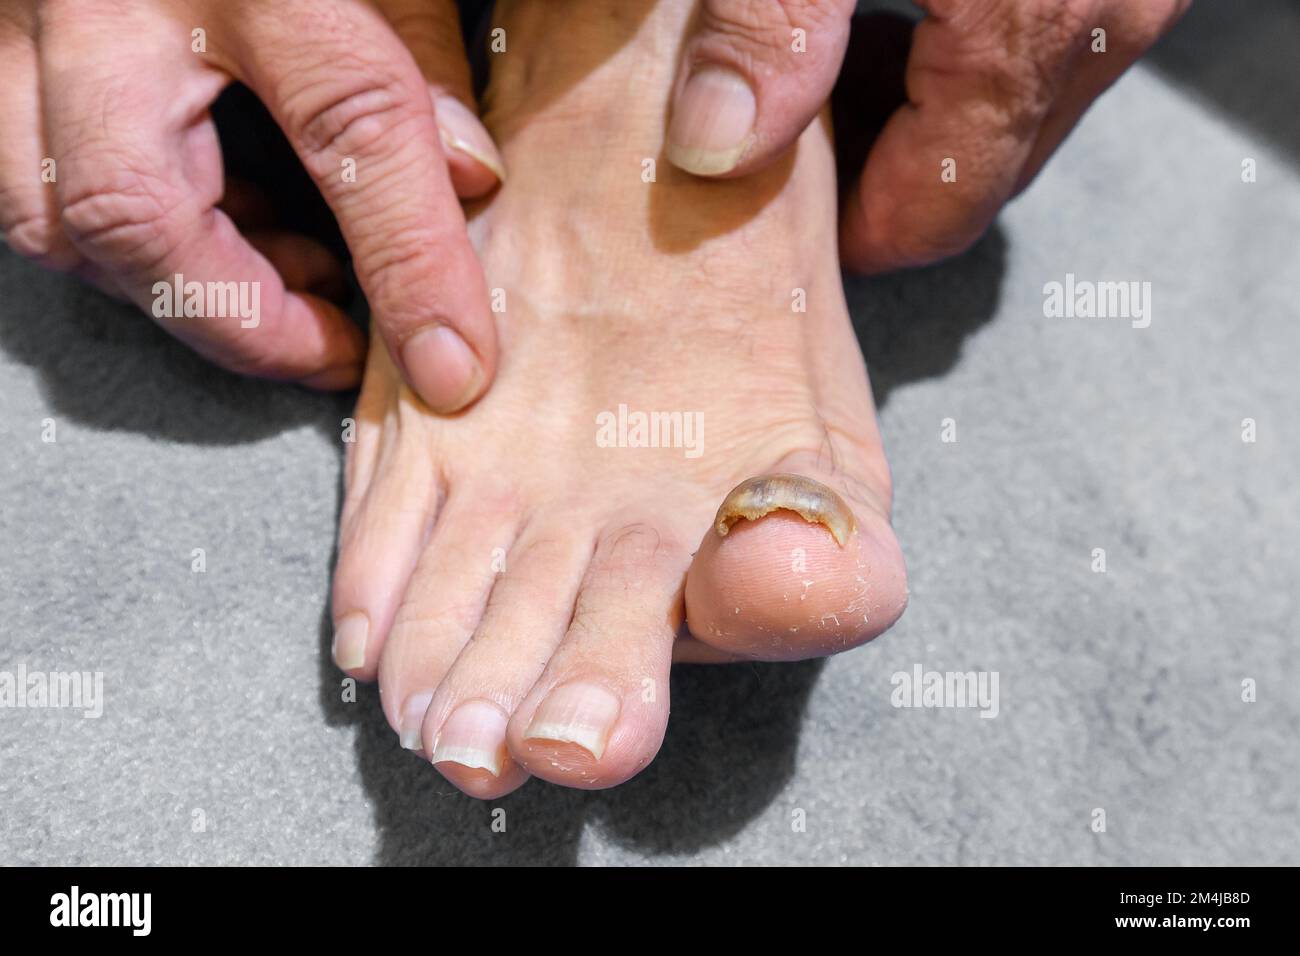 Une vue rapprochée d'un homme pieds nus avec un gros ongle jaune et épais,  onychomycose, une infection fongique des ongles d'orteil Photo Stock - Alamy